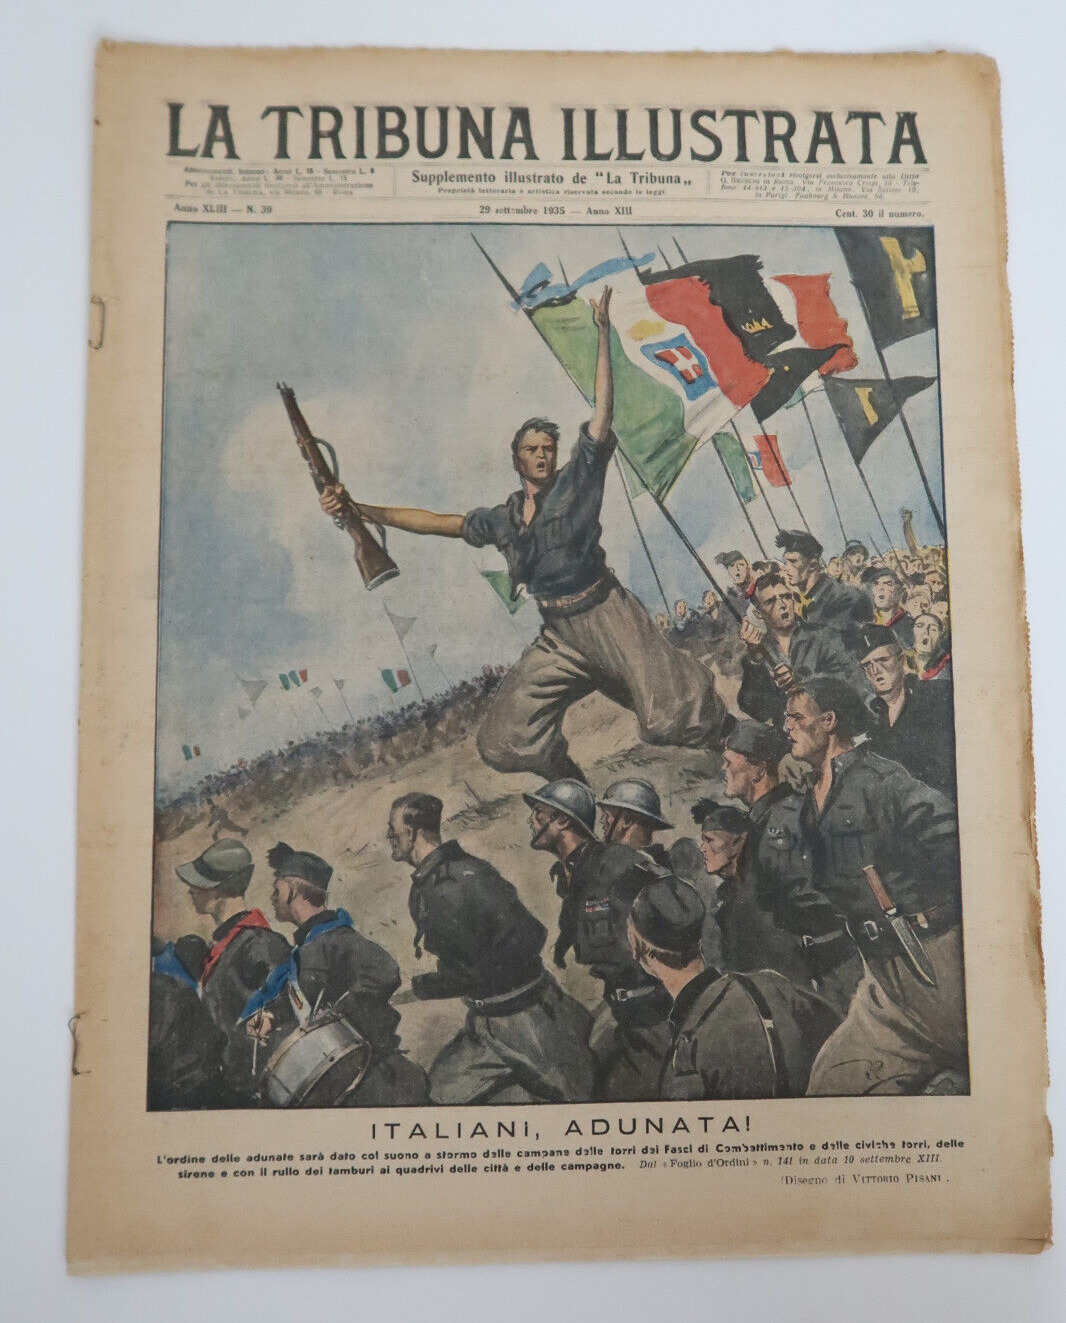 La Tribuna Illustrata 1935 Vintage Newspaper Italy Supplemento Italiani Adunatai